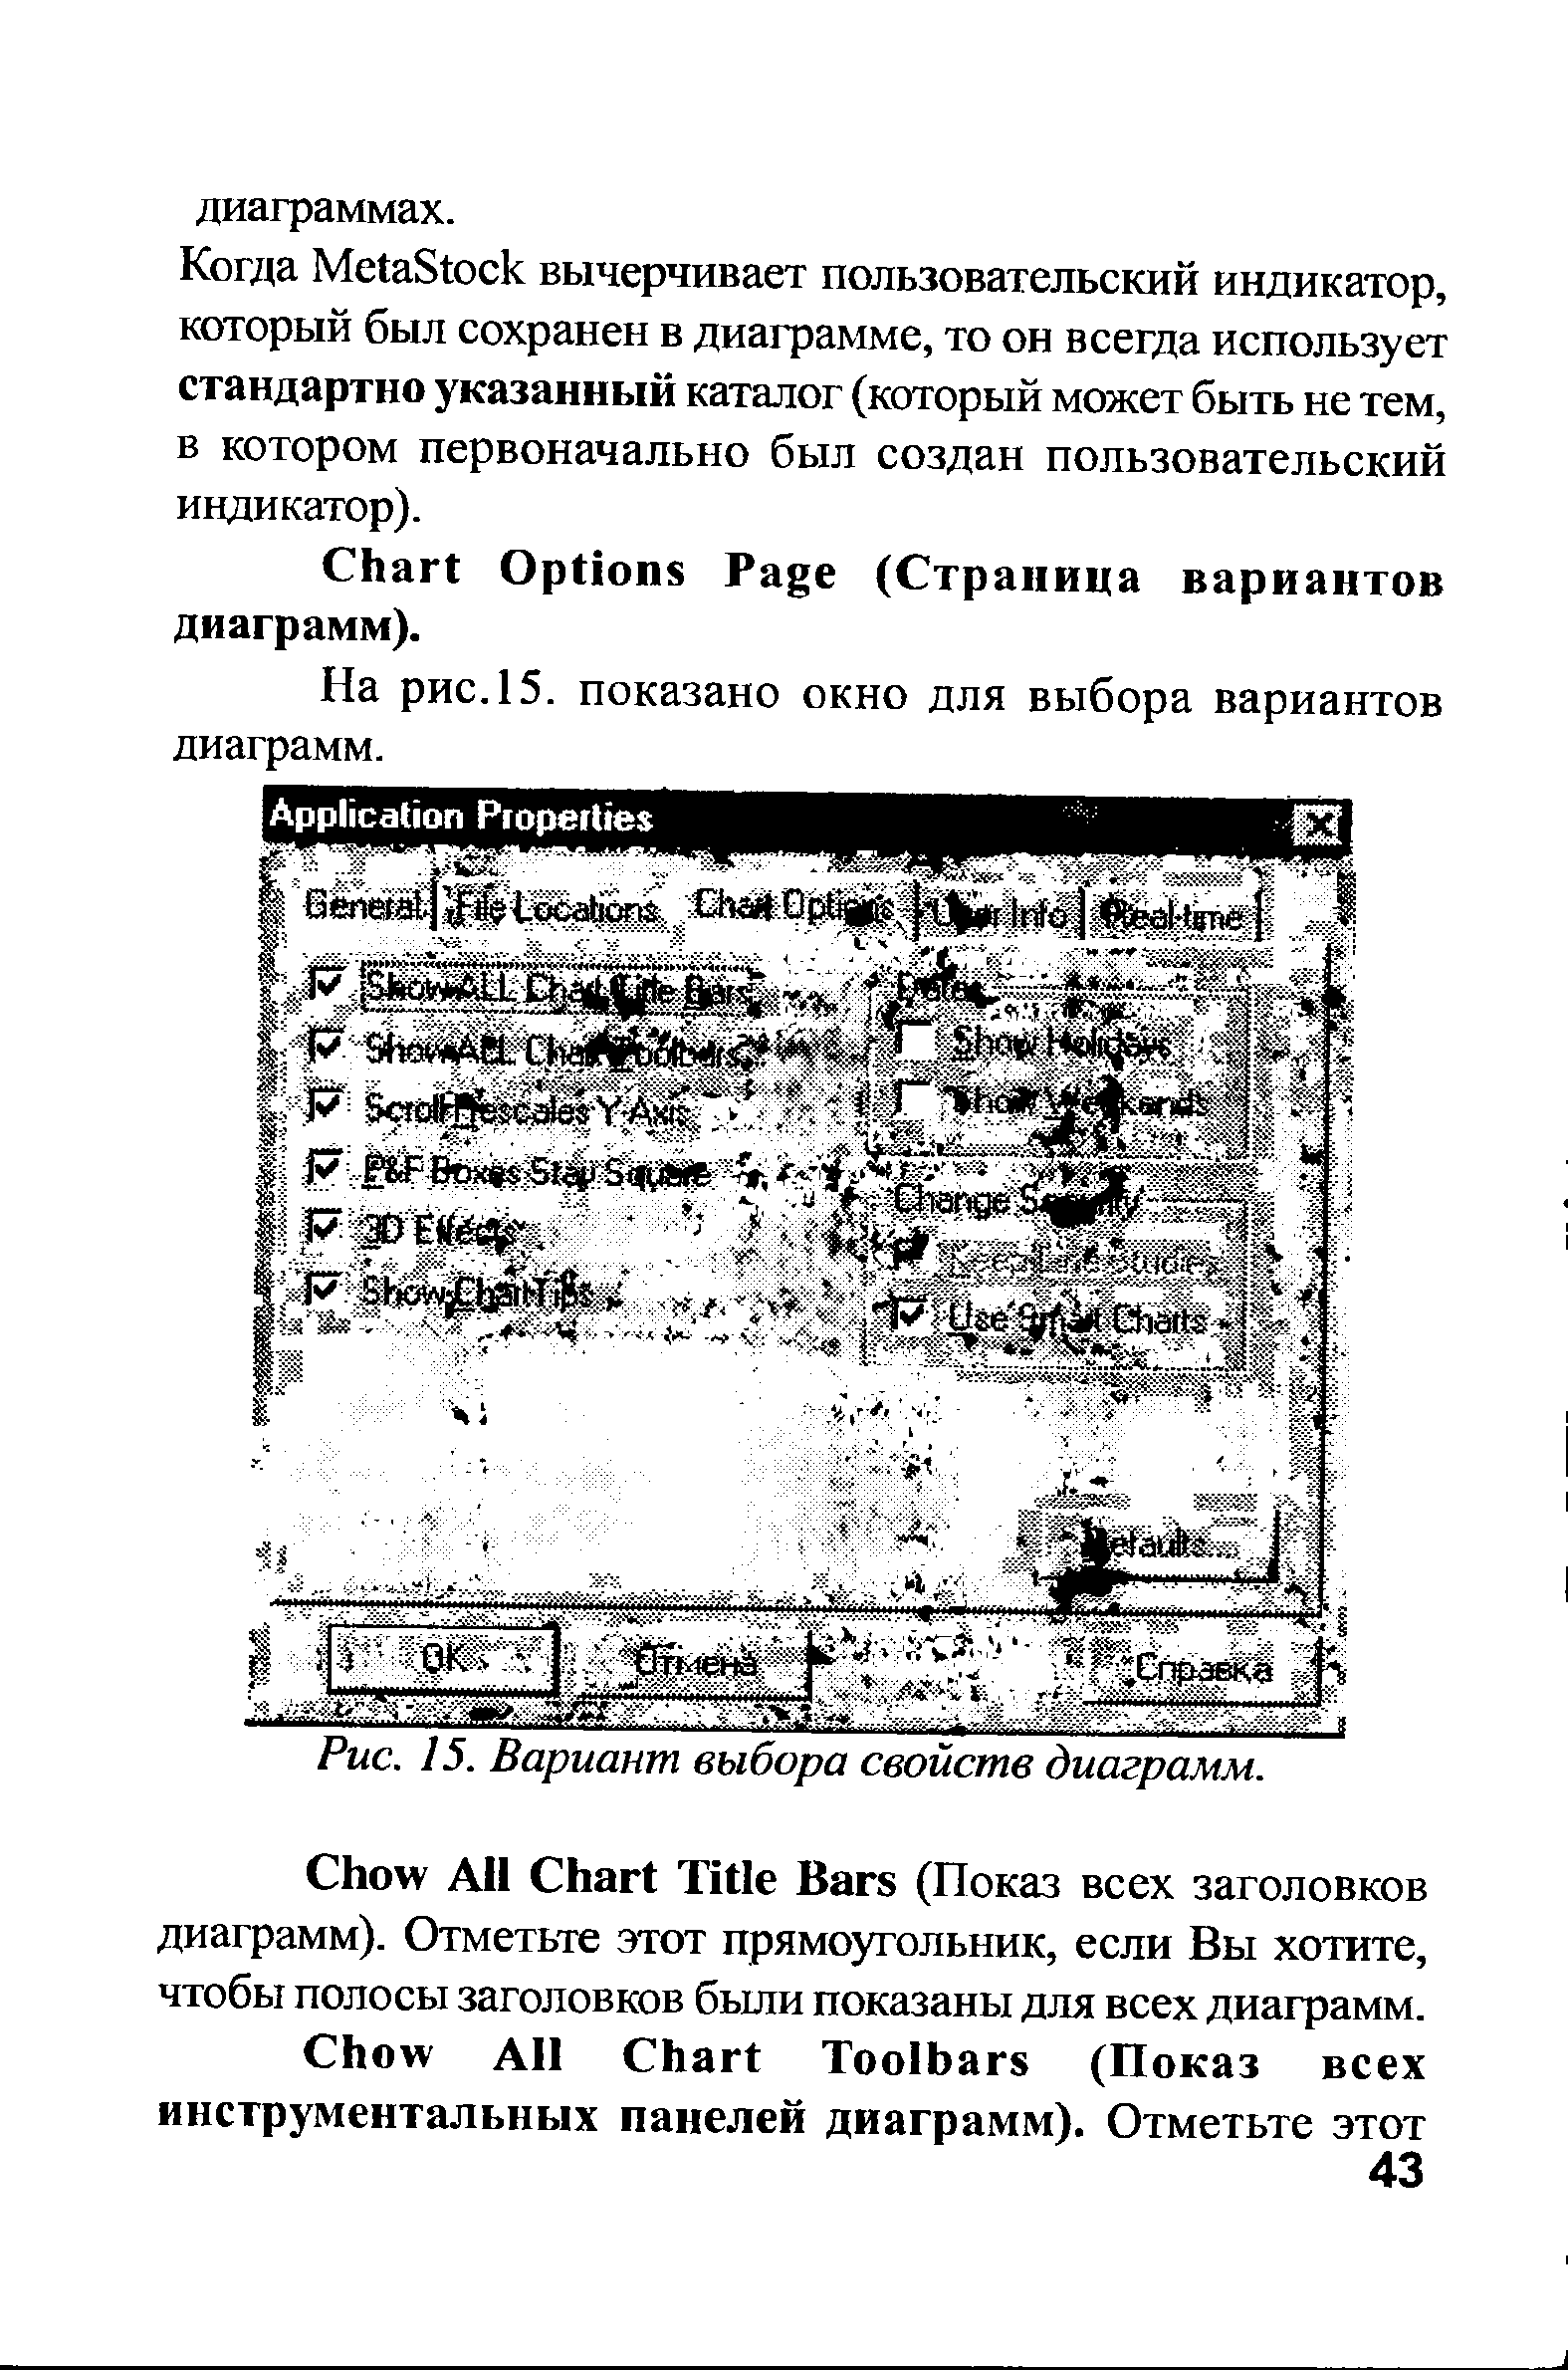 На рис.15, показано окно для выбора вариантов диаграмм.
